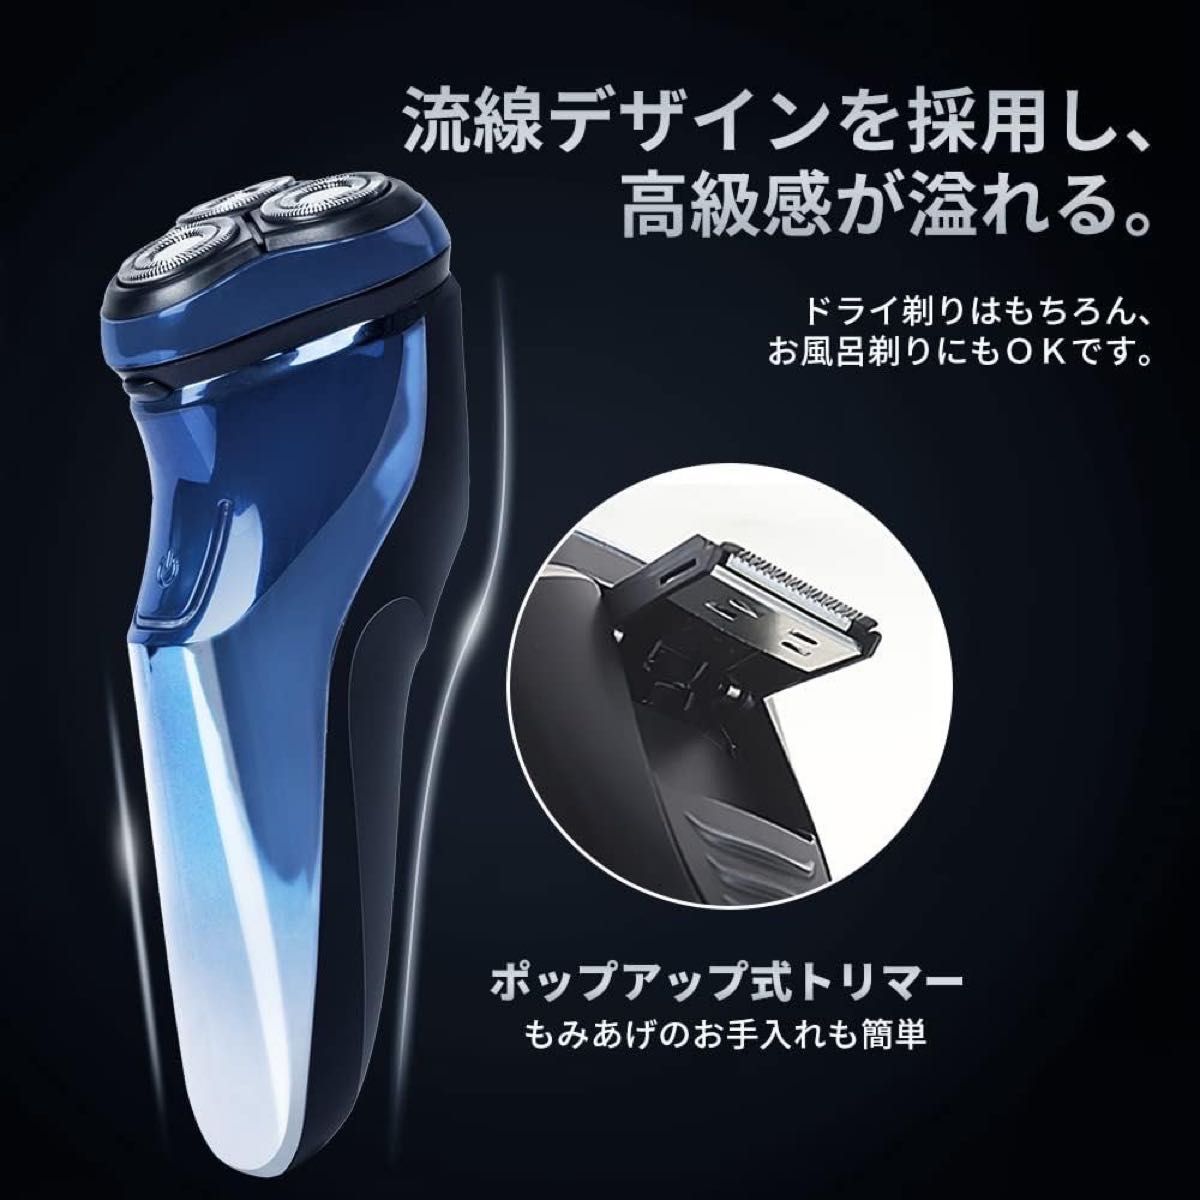 【夜間限定タイムセール】メンズ 電気シェーバー 電気シェーバー 髭剃り 自動研磨機能 USB充電式